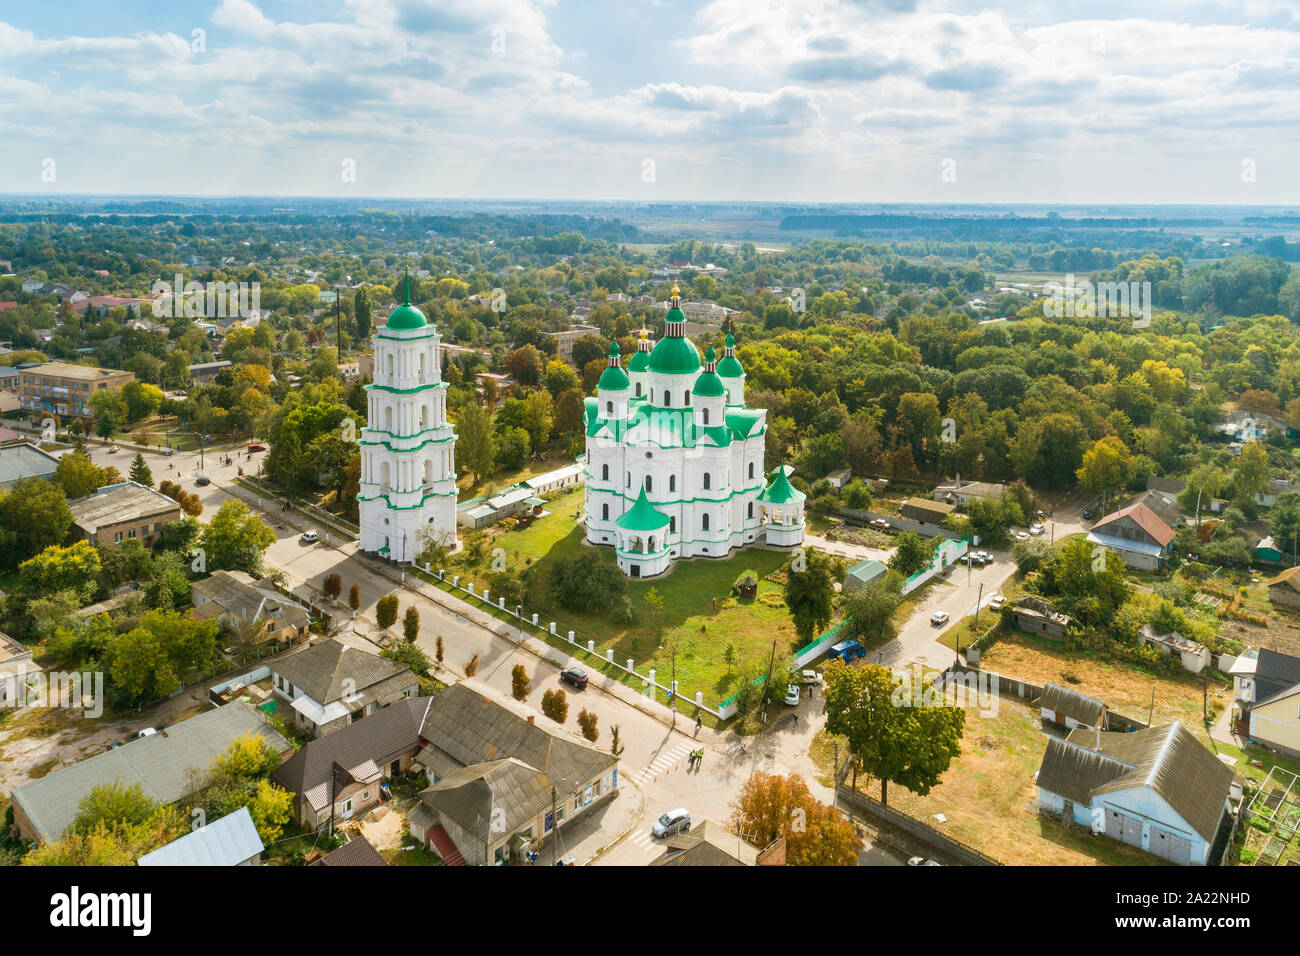 Luftaufnahme von Dom von der Geburt der seligen Jungfrau in Tschernigow Kozelets Stadt, Region, in der Ukraine. Kathedrale gebaut in der ukrainischen Barock styl Stockfoto